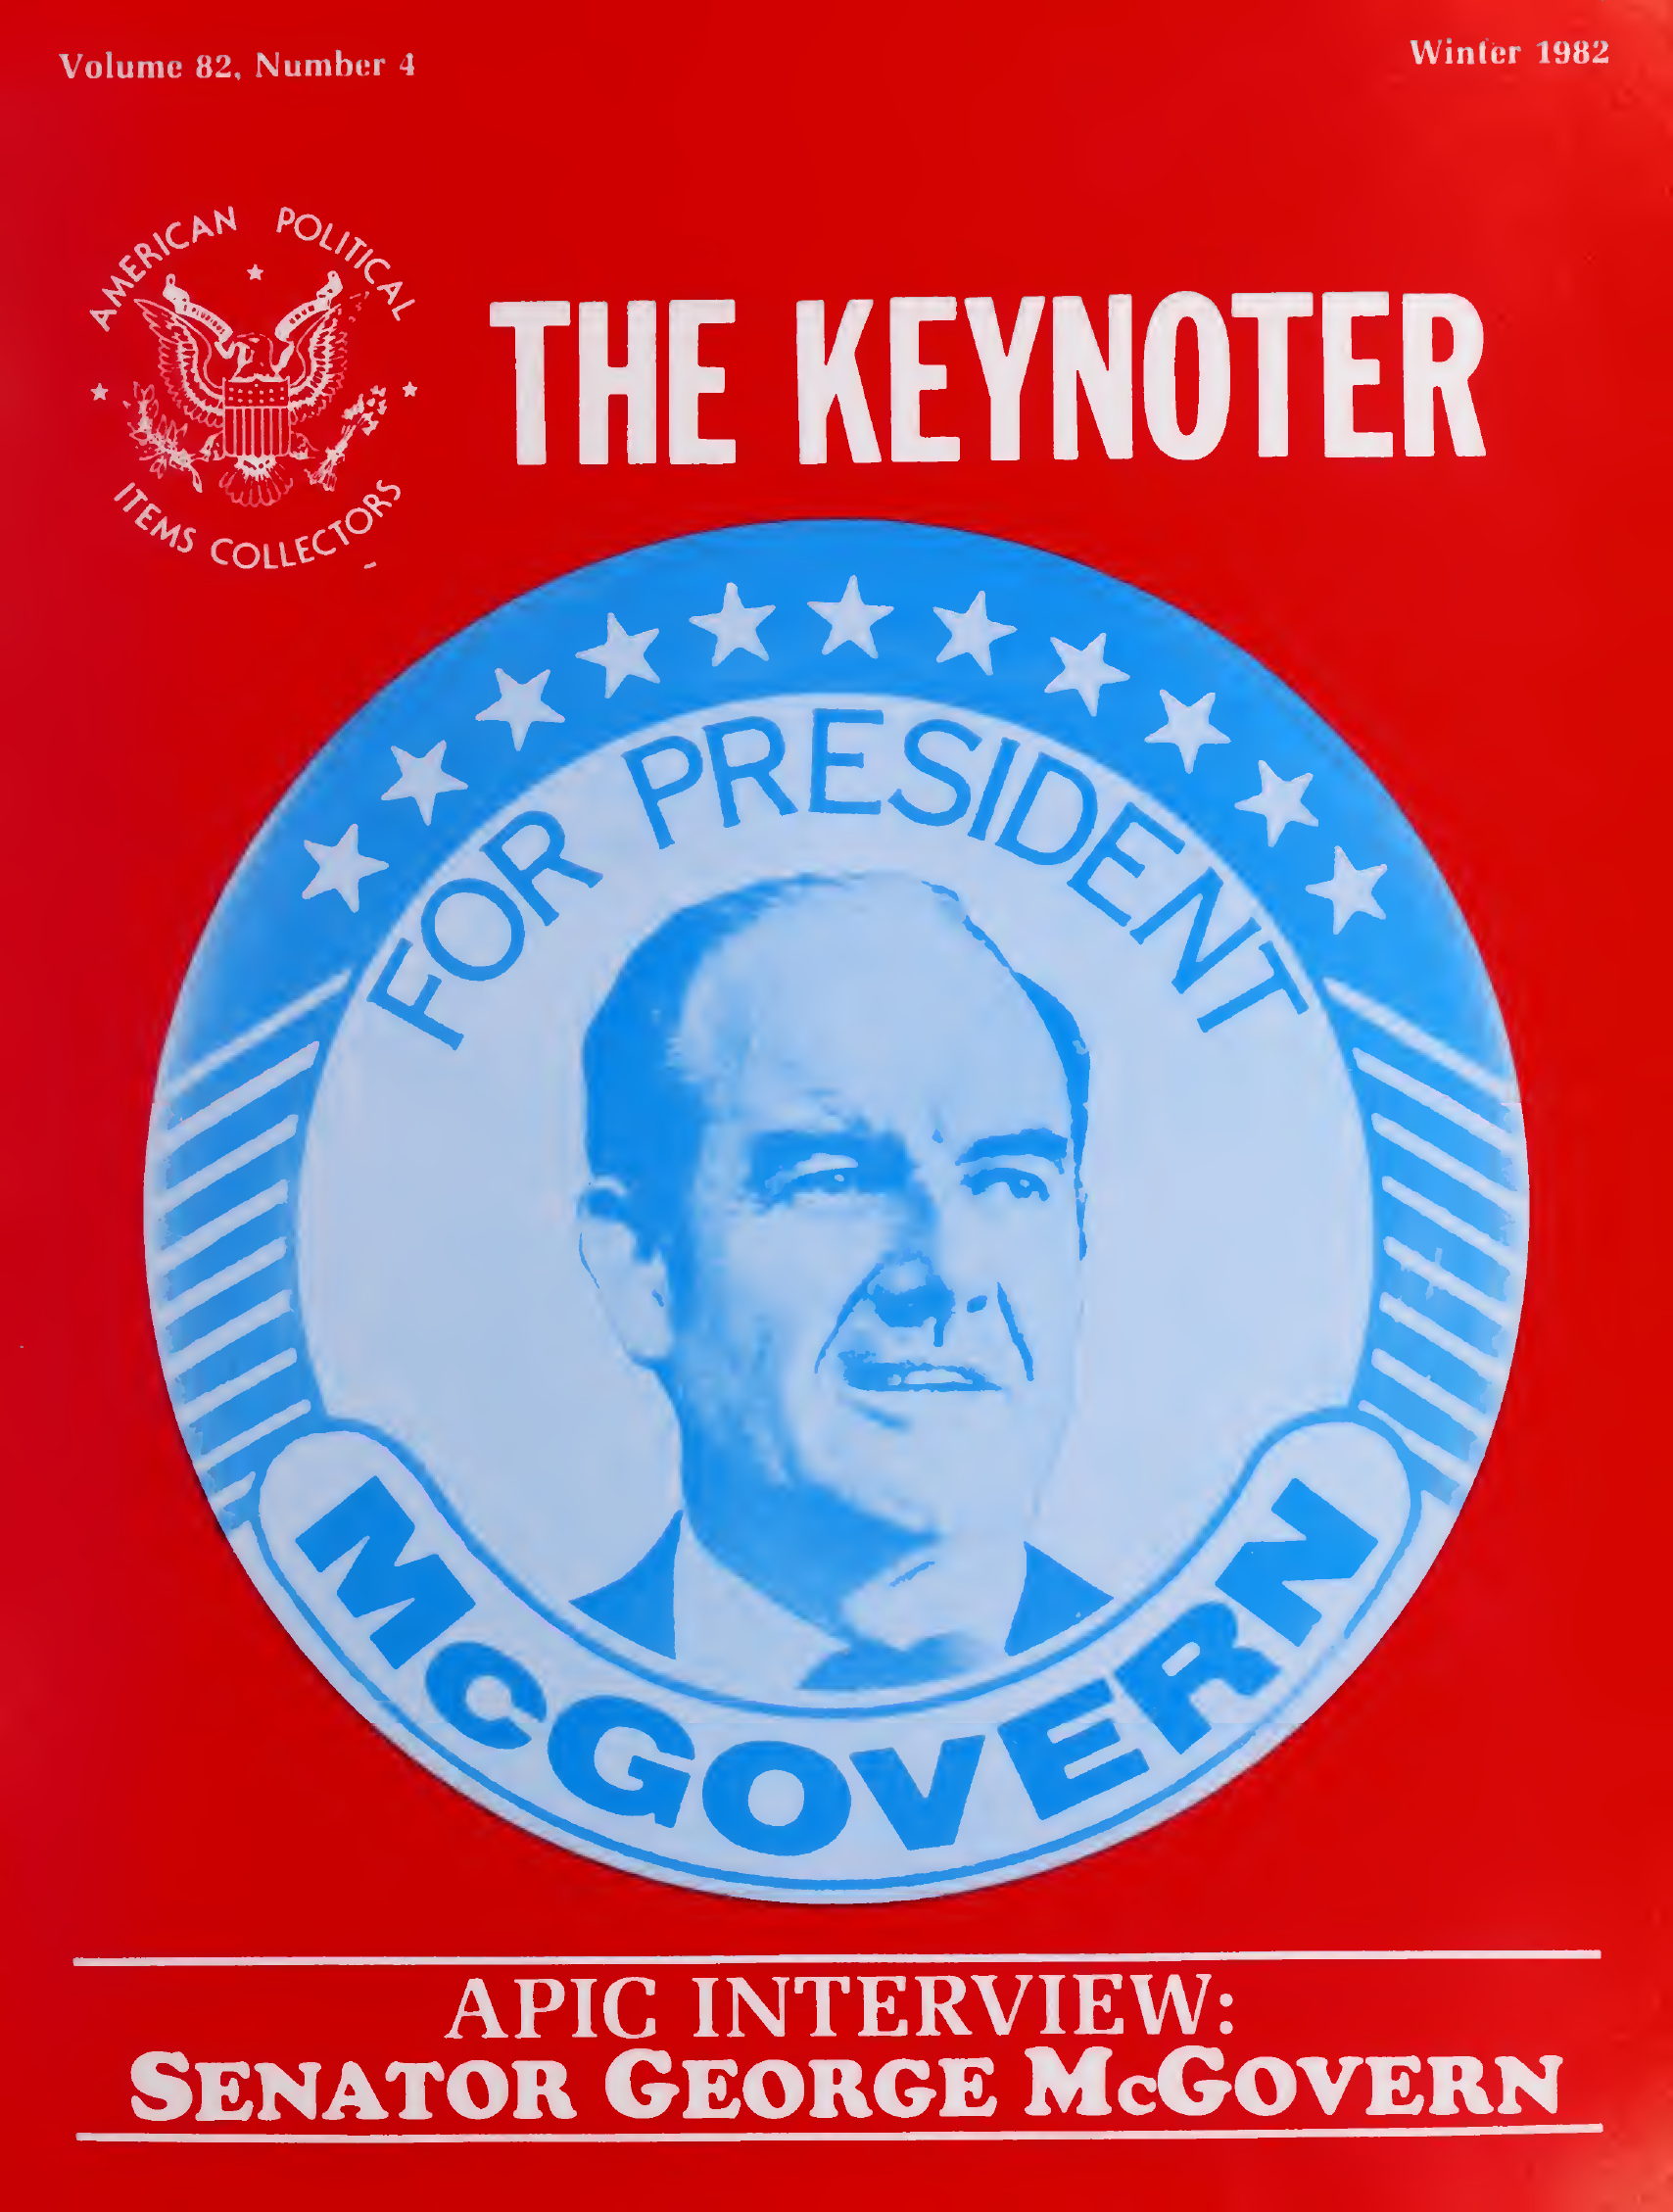 Keynoter 1982 - Winter - Issue 4